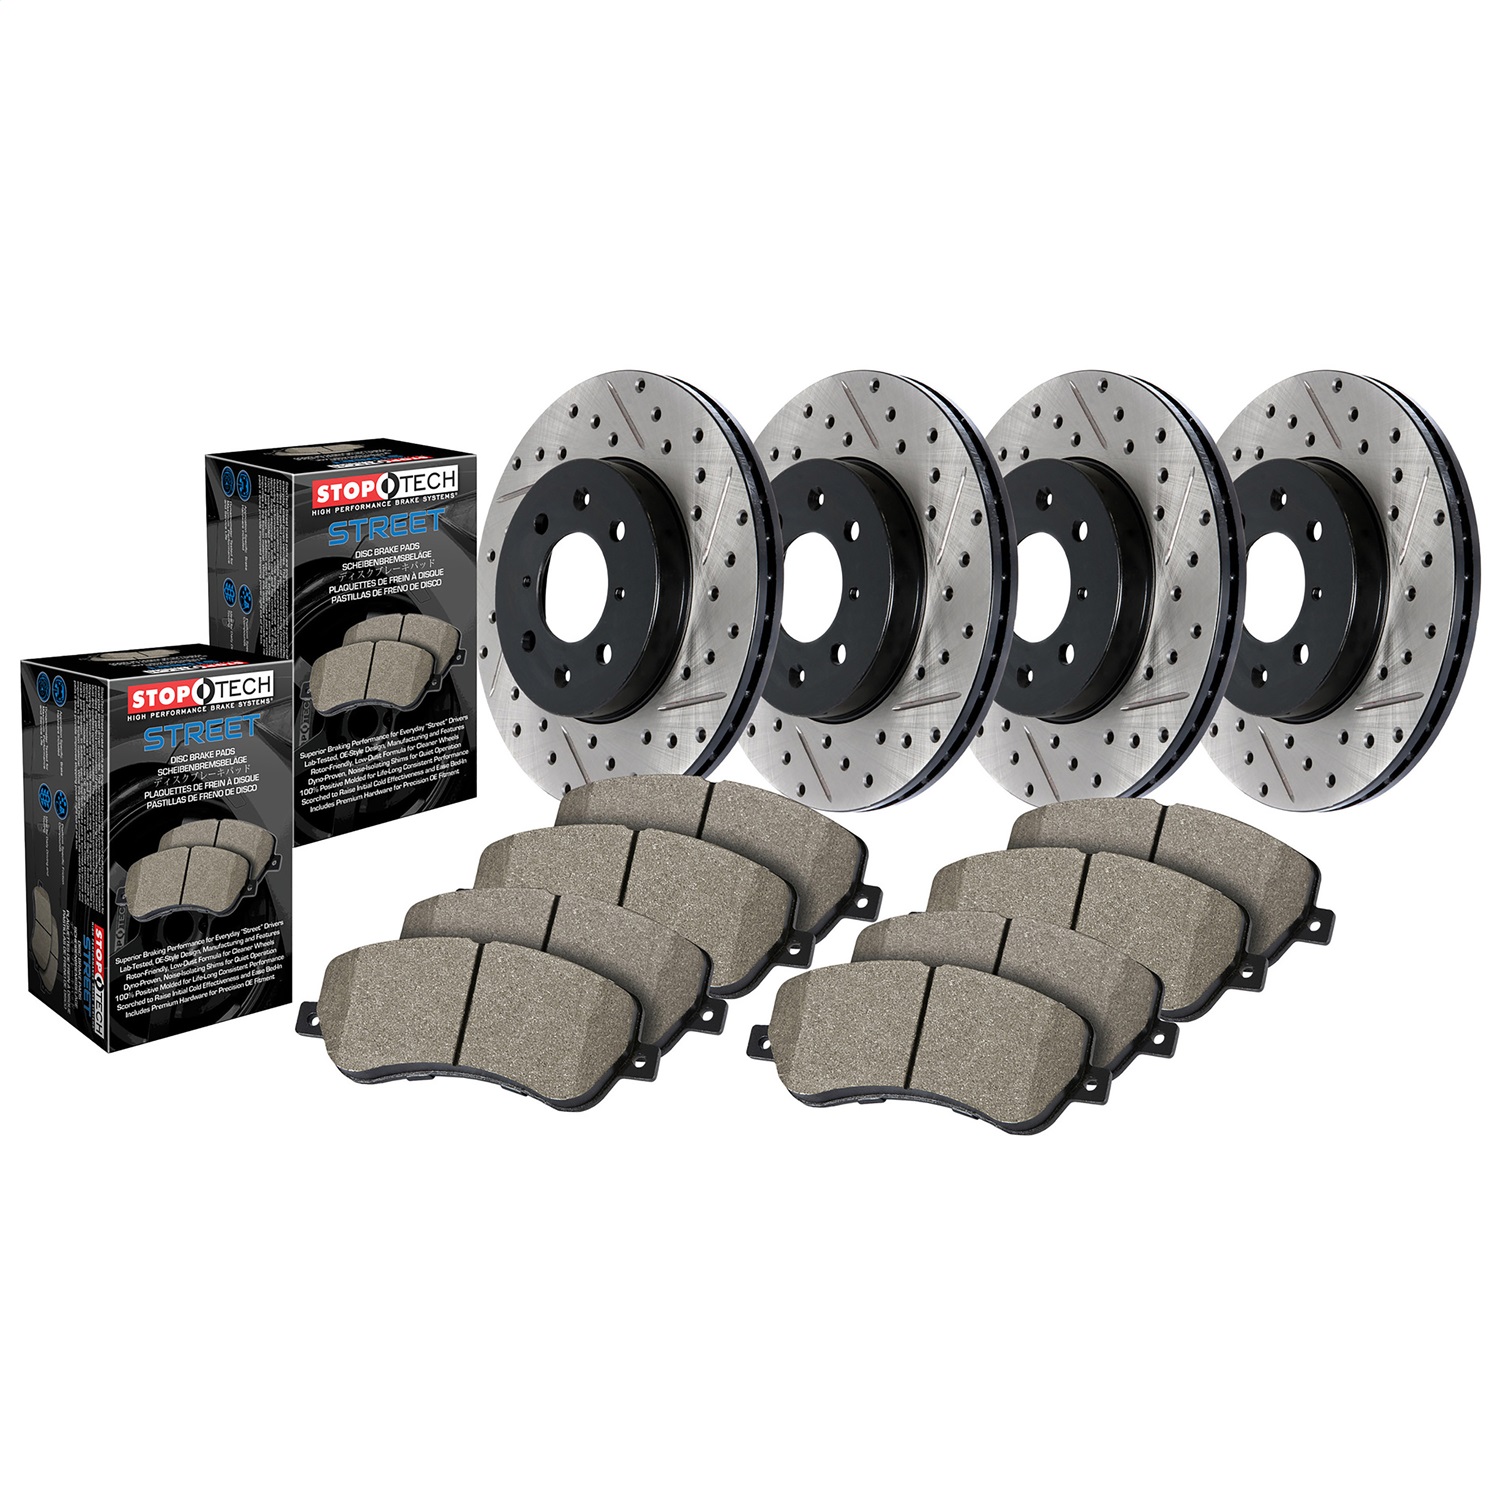 StopTech 935.62037 Disc Brake Upgrade Kit